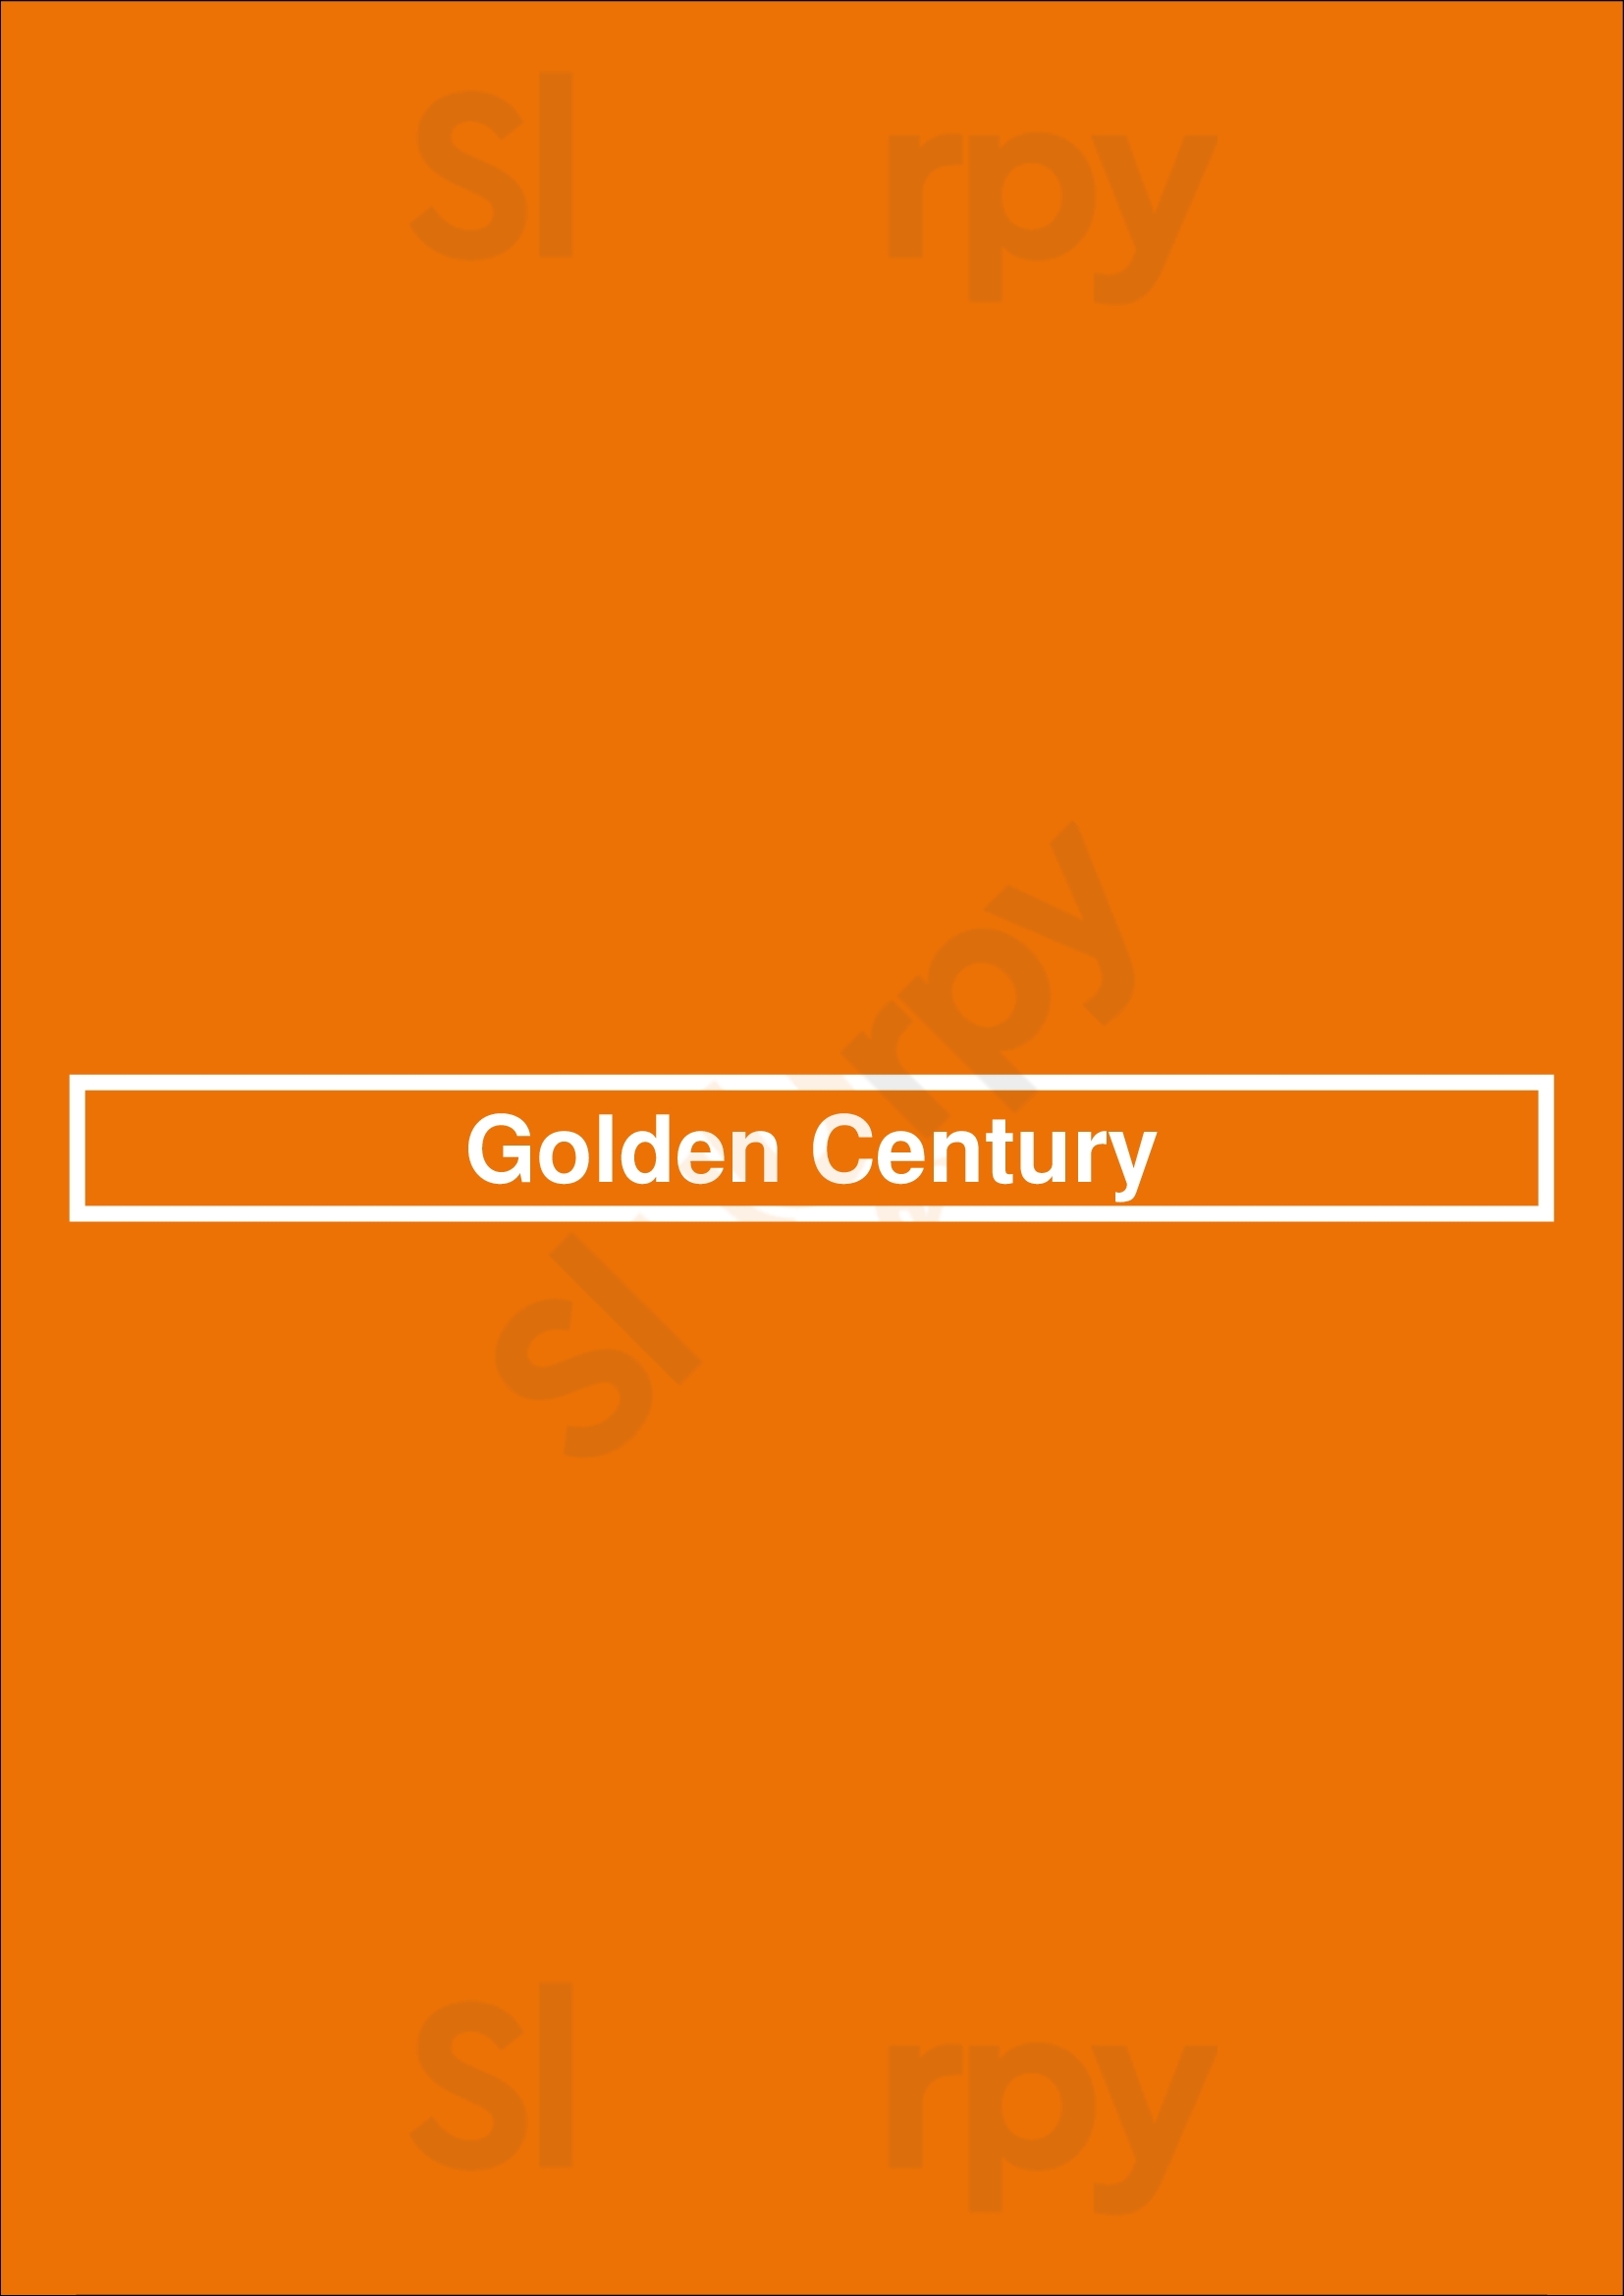 Golden Century Sydney Menu - 1